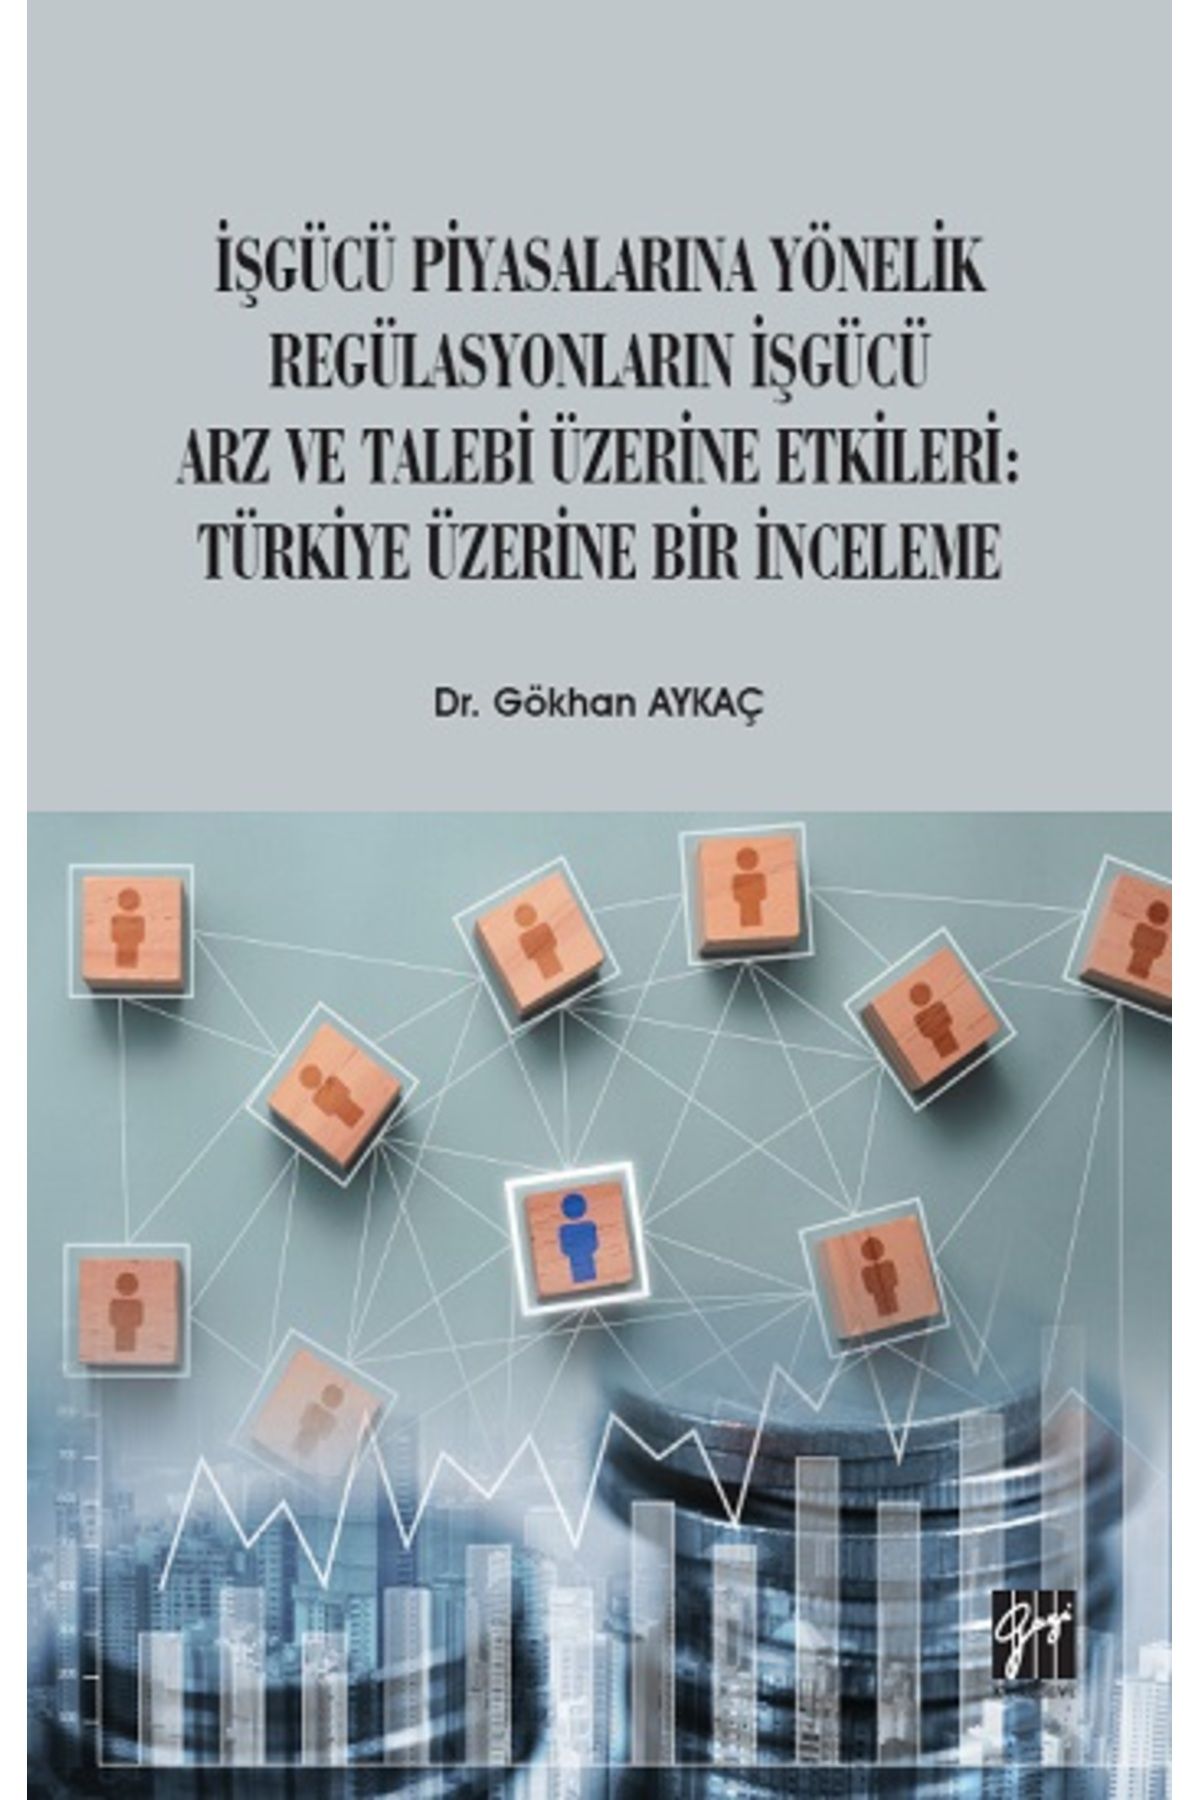 Gazi Kitabevi İşgücü Piyasalarına Yönelik Regülasyonların İşgücü Arz ve Talep Üzerine Etkileri: Türkiye Üzerine Bi